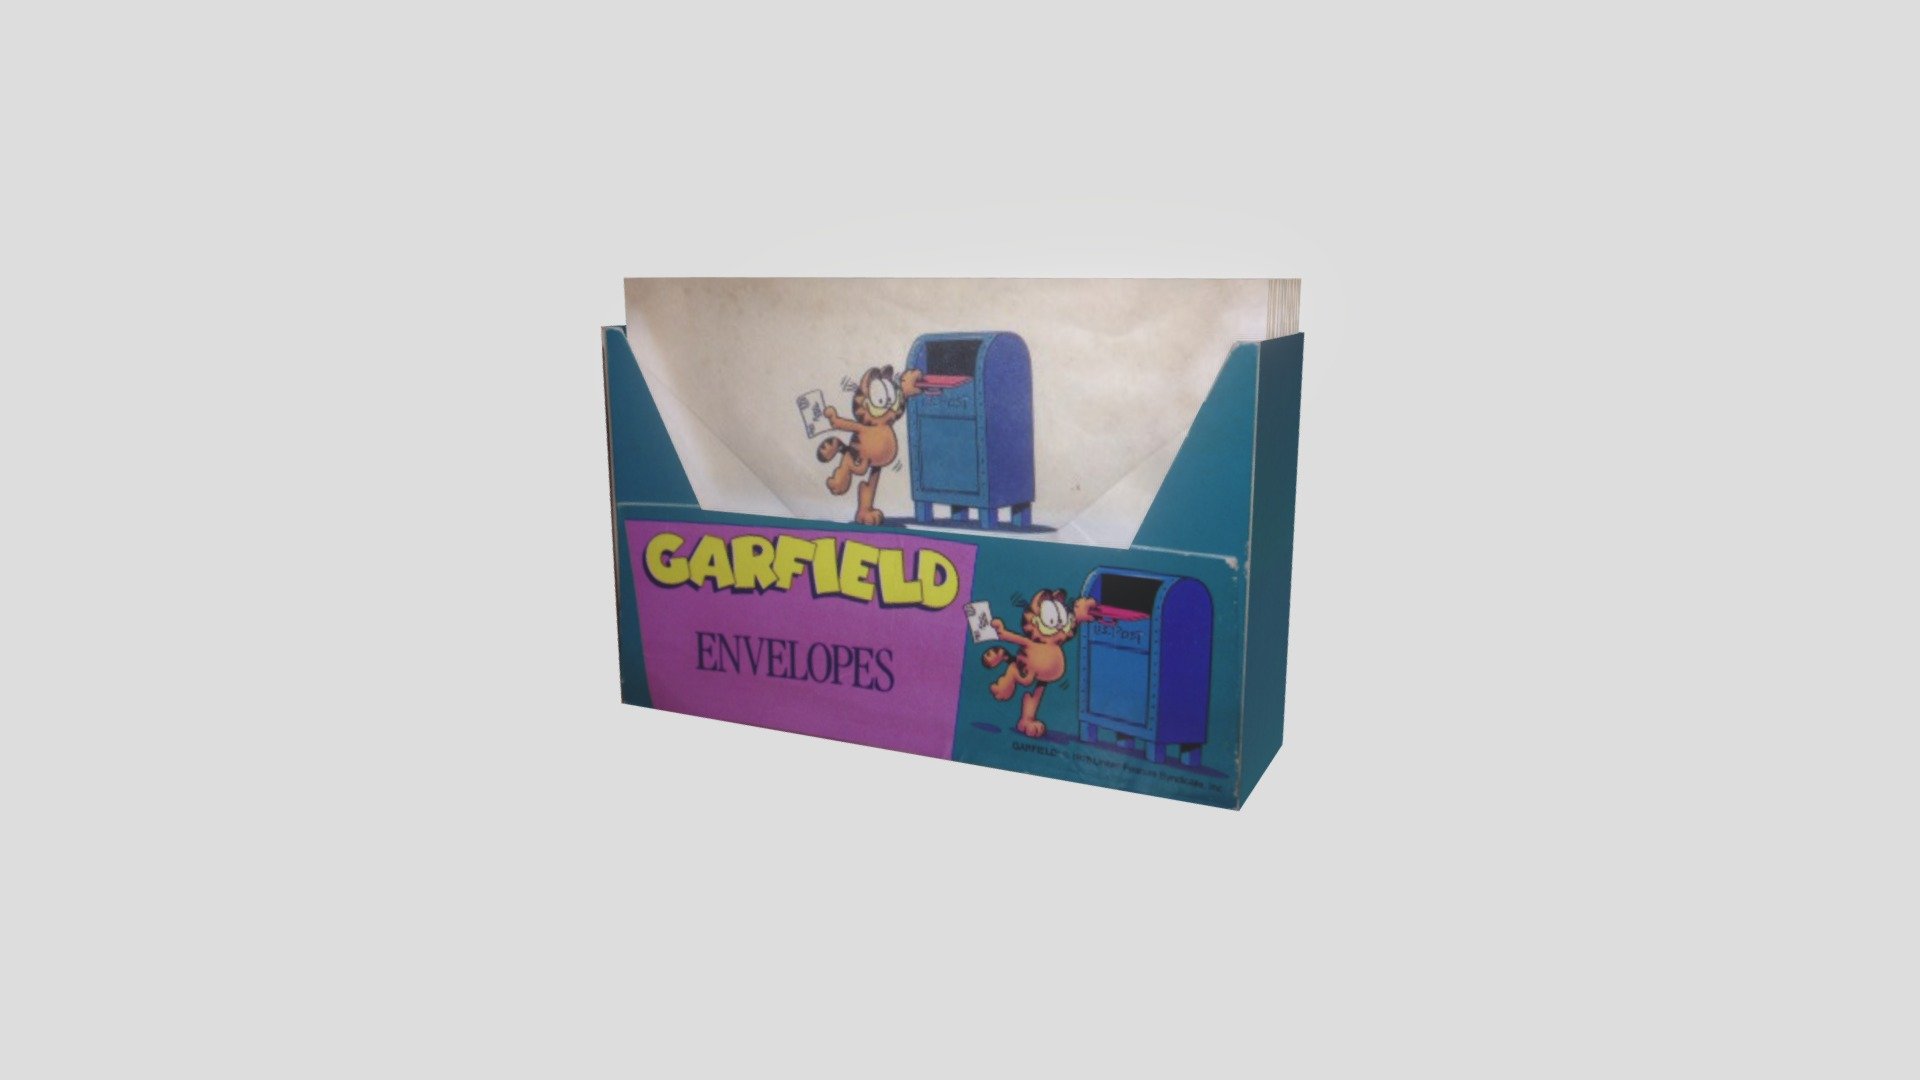 Garfield Envelopes and Box